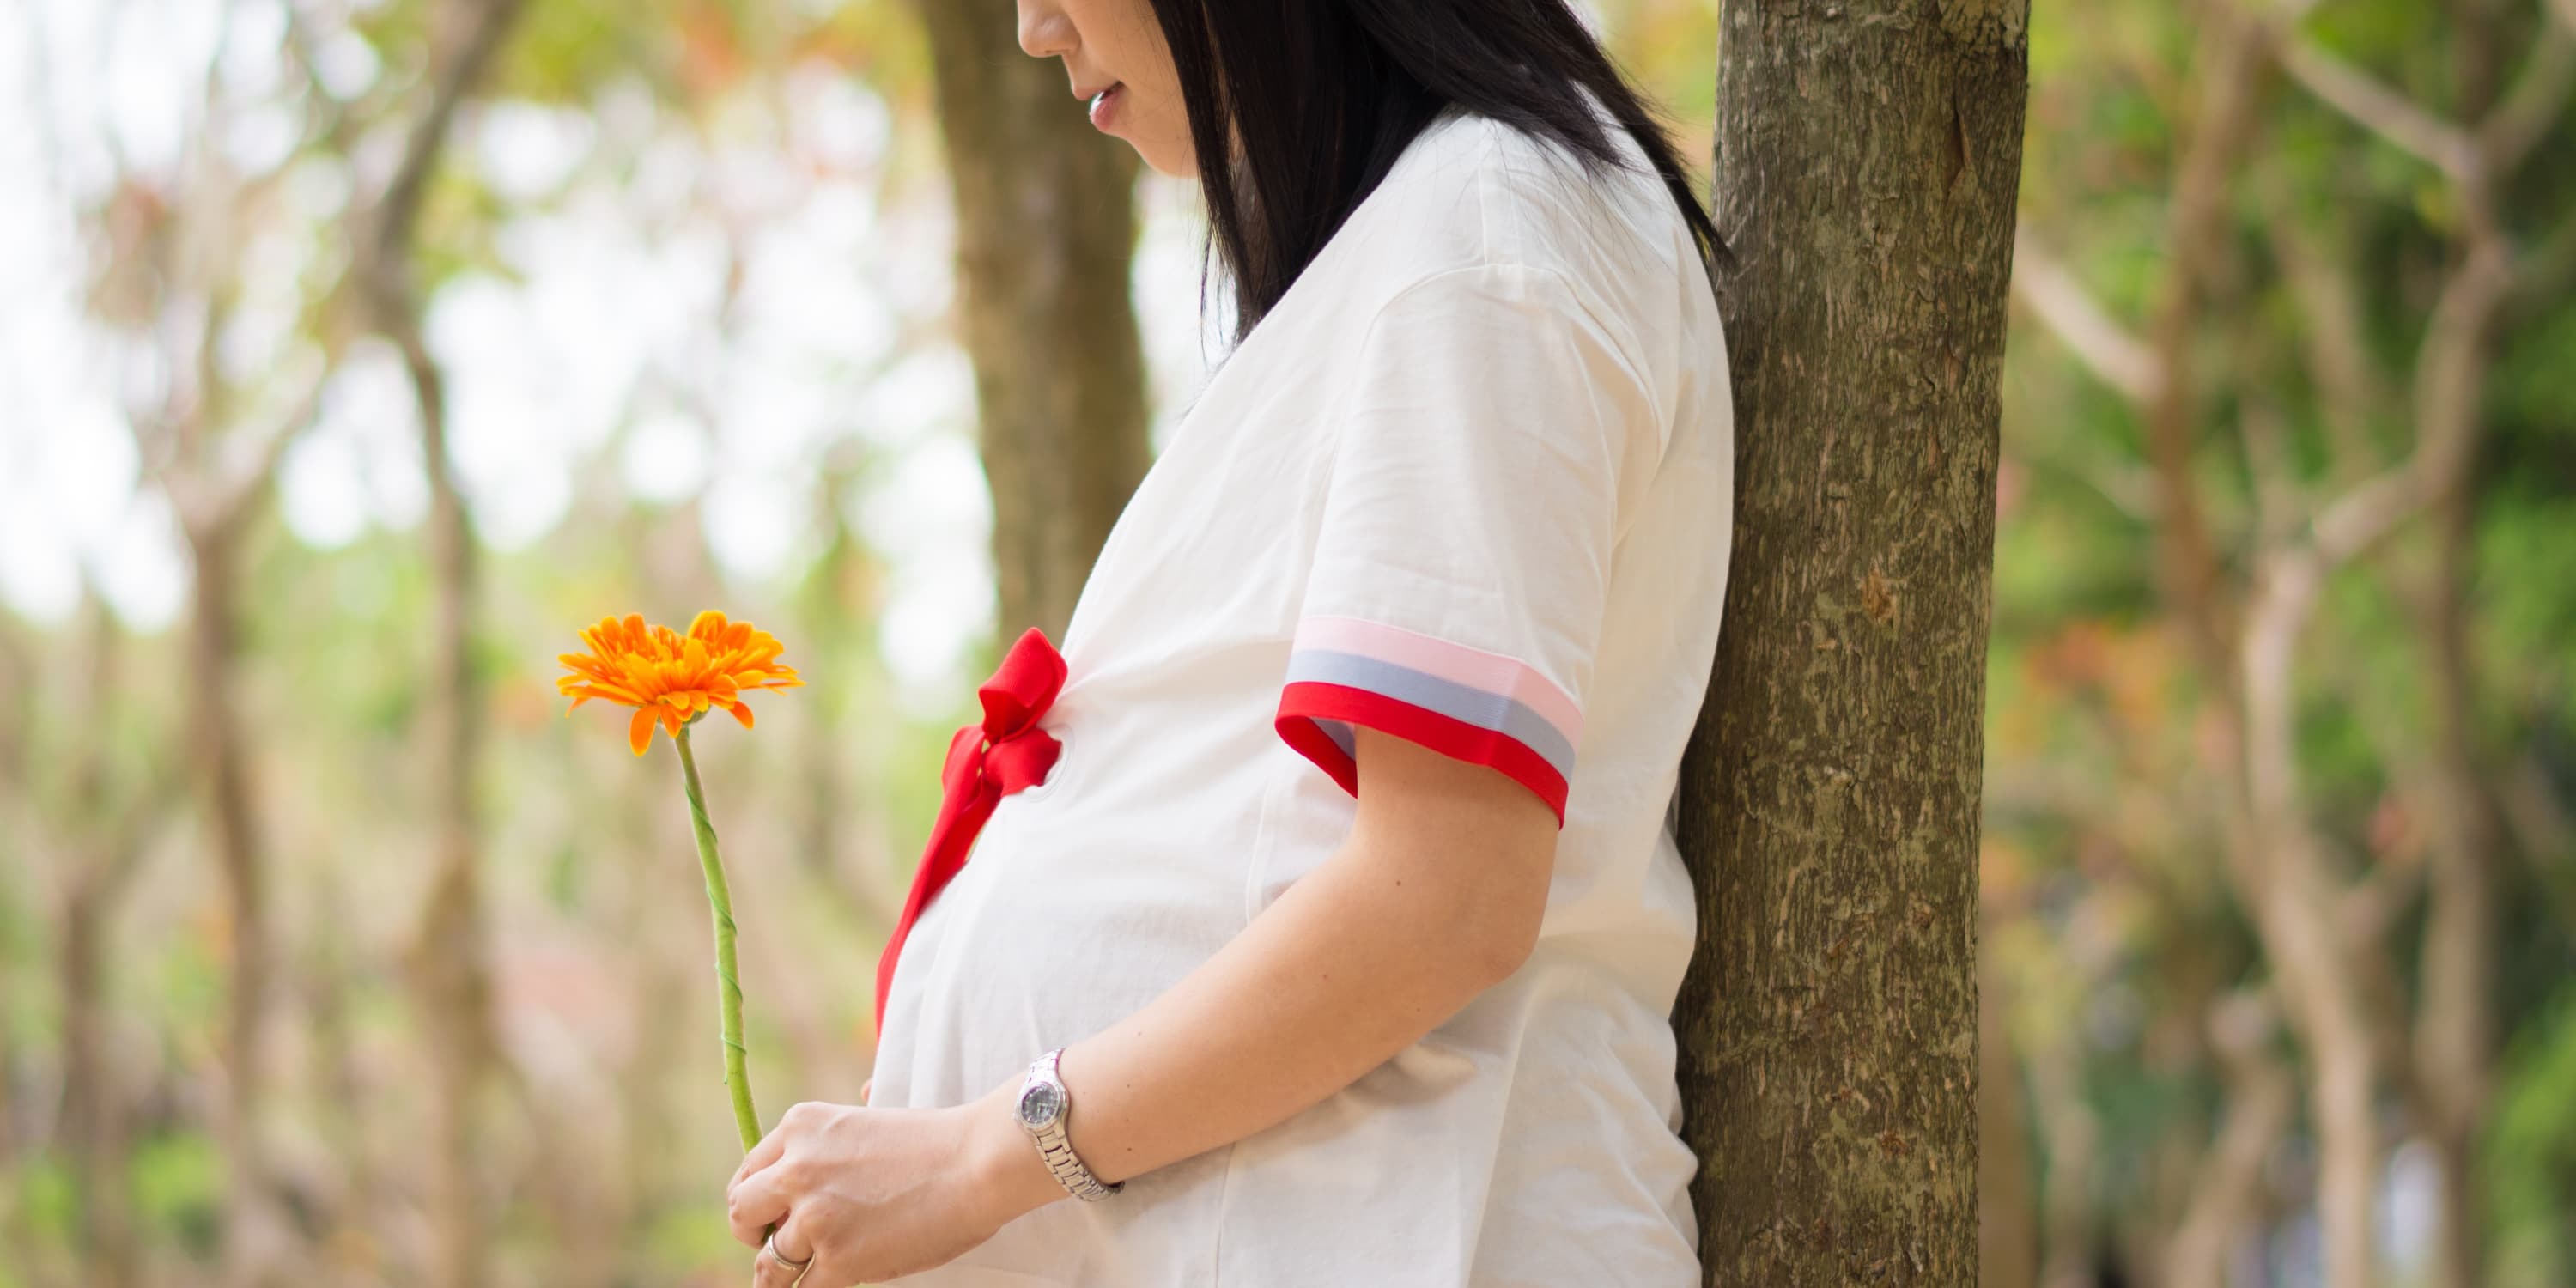 Vista lateral: una mujer embarazada debajo de un árbol sosteniendo una flor en las manos